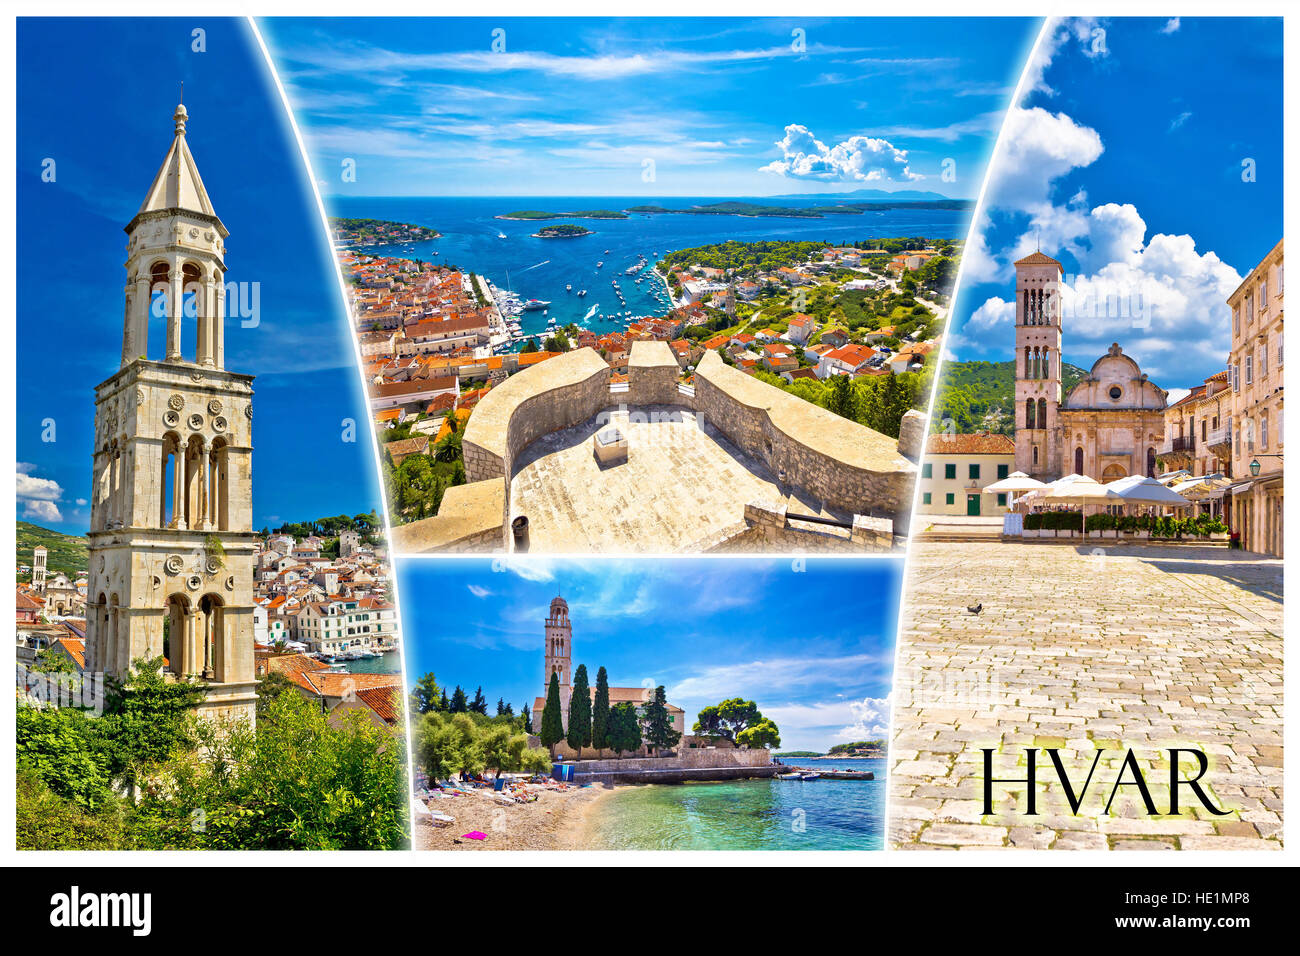 Île de Hvar carte postale touristique avec étiquette, des sites célèbres et de la belle nature, la Dalmatie, Croatie Banque D'Images